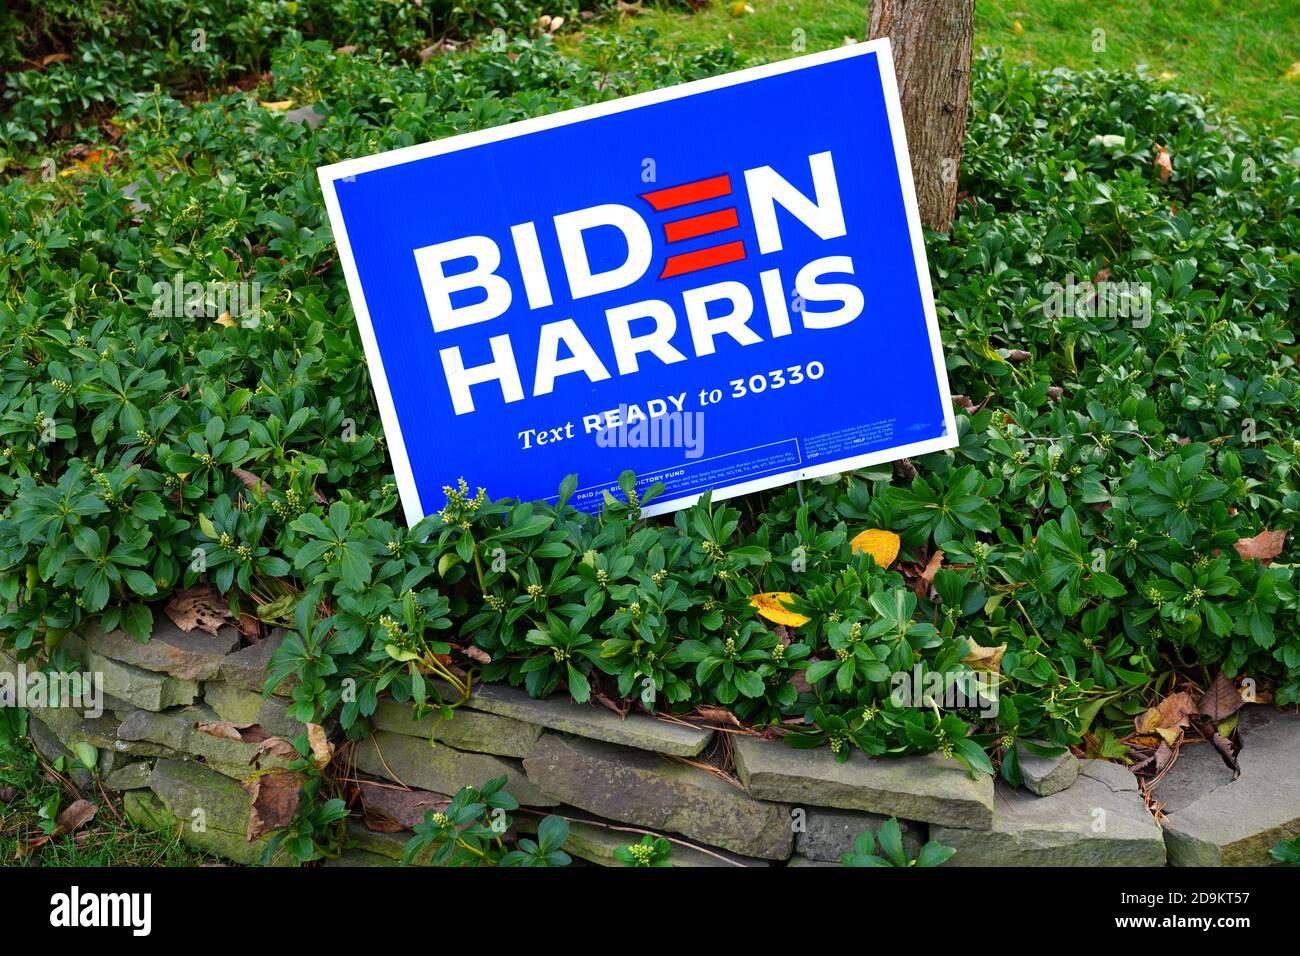 PRINCETON, NJ -15 OTT 2020- Vista di un cartello del prato di Biden Harris democratico durante la campagna elettorale presidenziale del 2020 negli Stati Uniti. Foto Stock